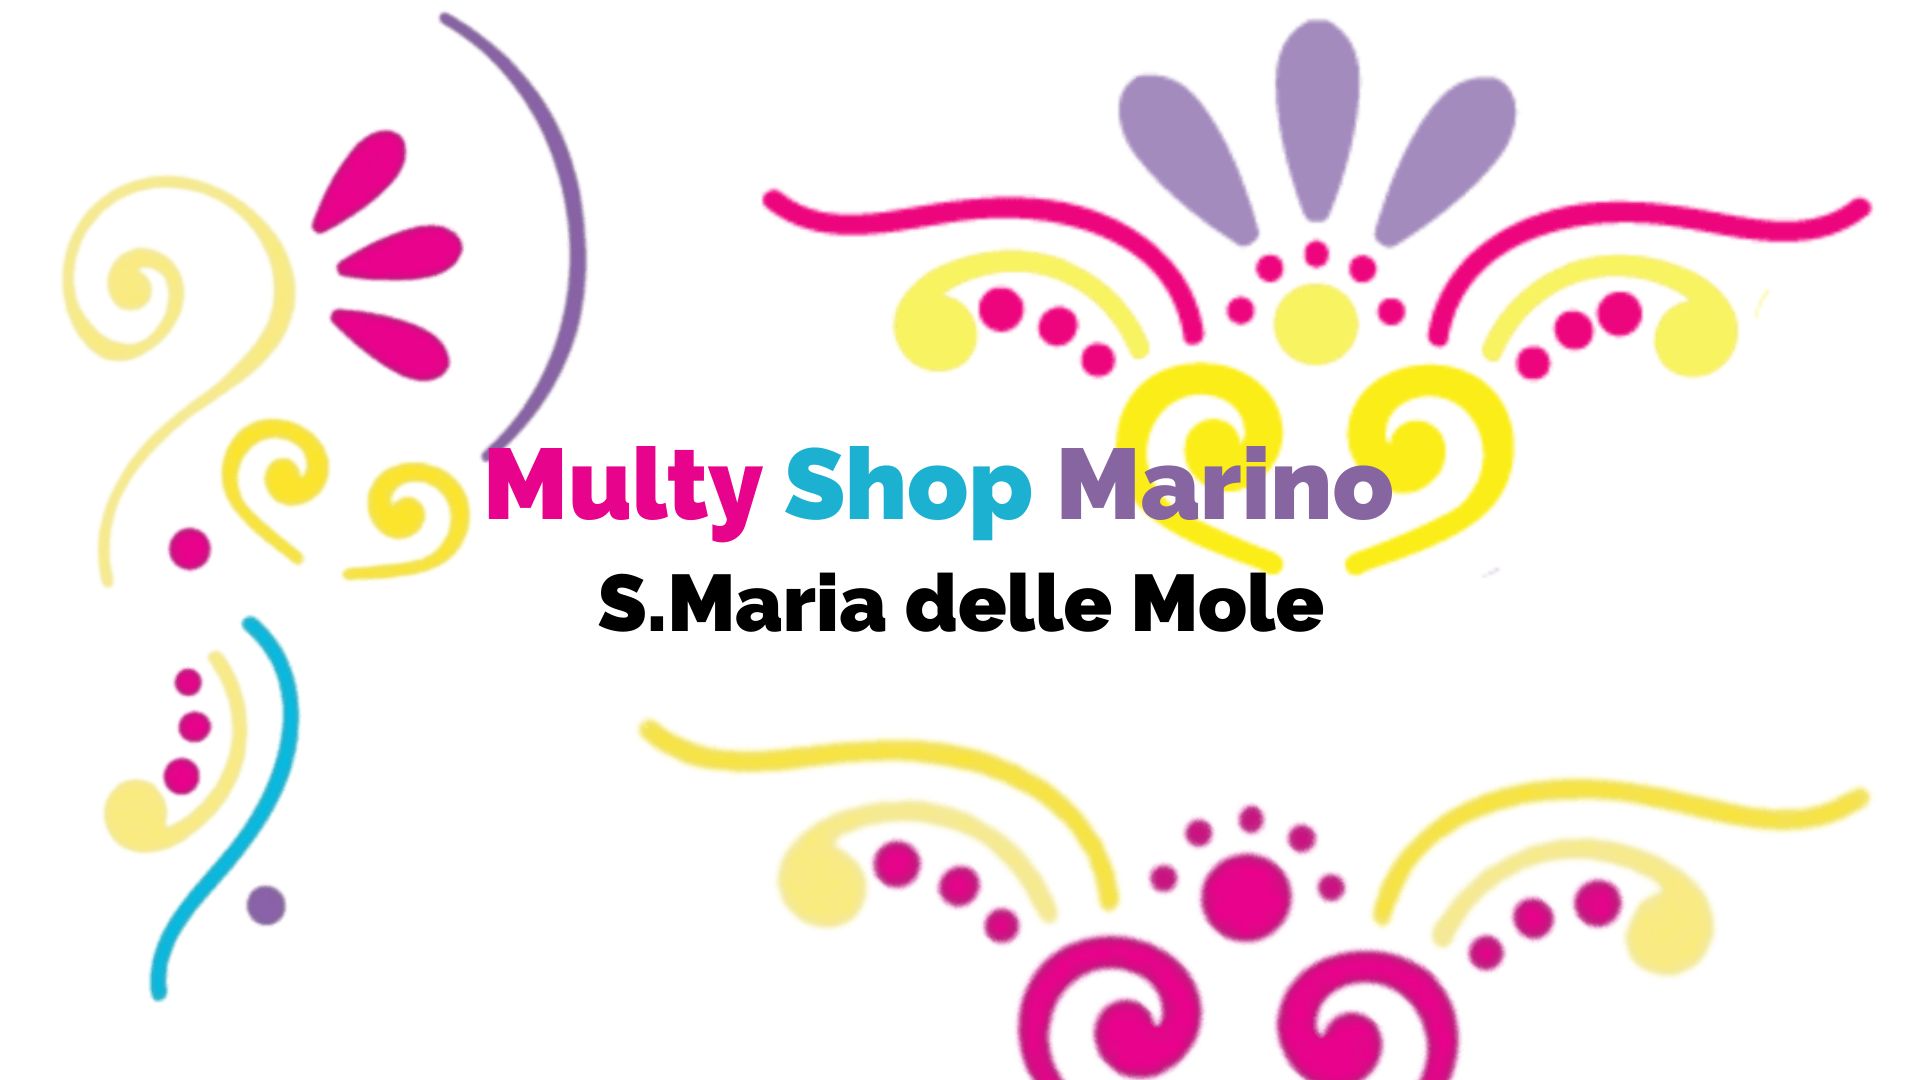 Multy Shop Movida h24 Marino S.M. delle Mole